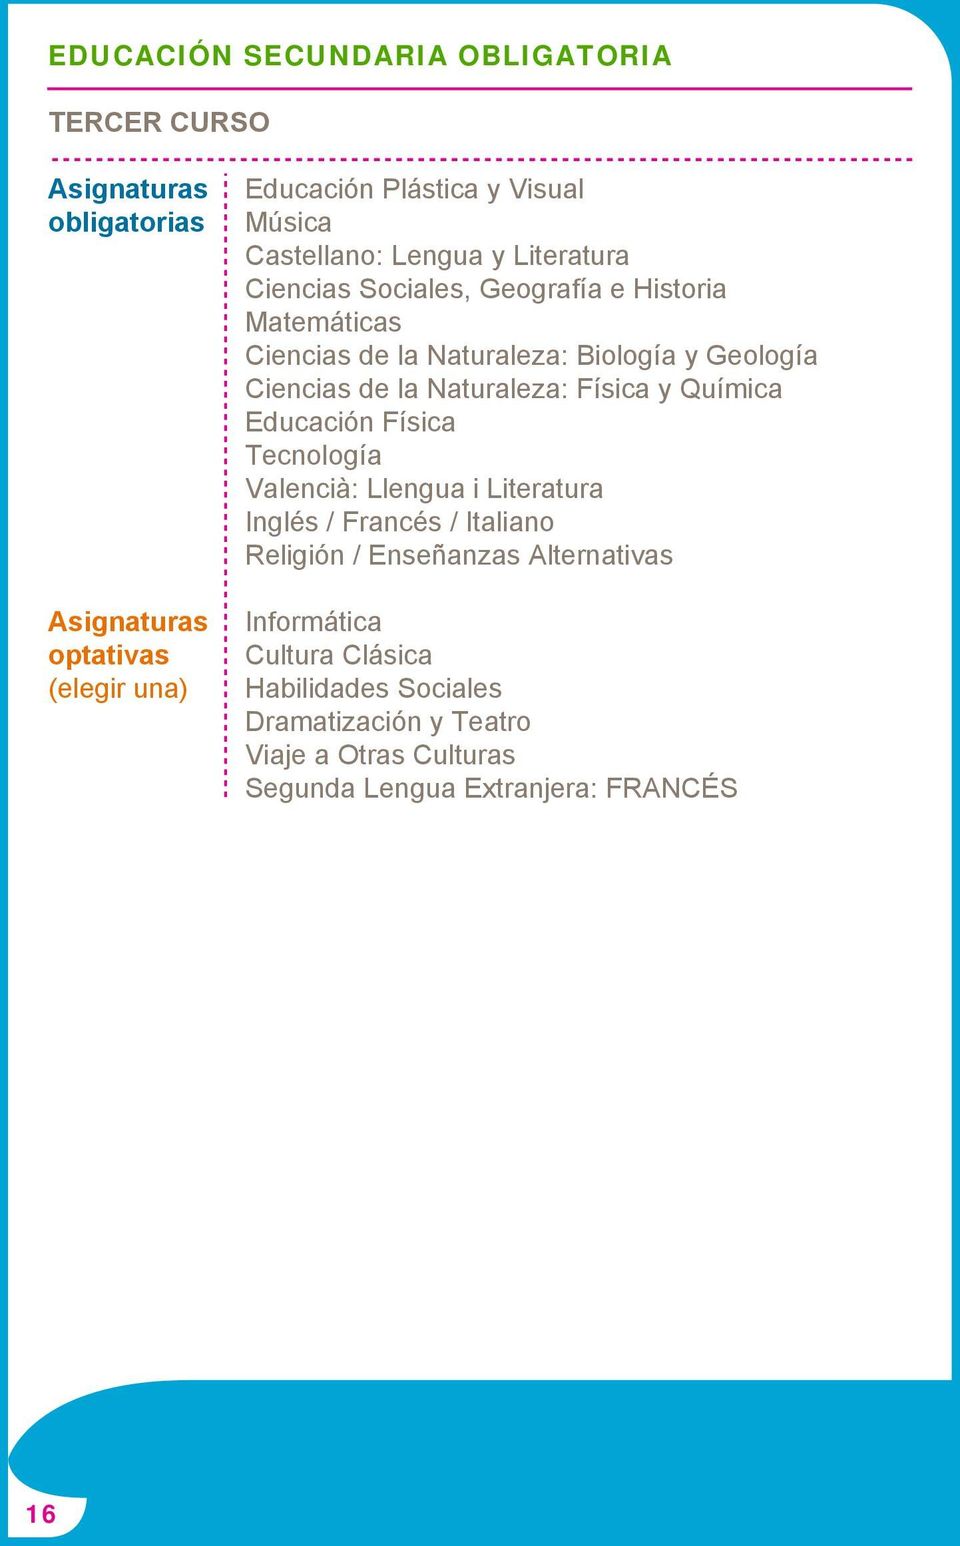 la Naturaleza: Física y Química Educación Física Tecnología Valencià: Llengua i Literatura Inglés / Francés / Italiano Religión / Enseñanzas